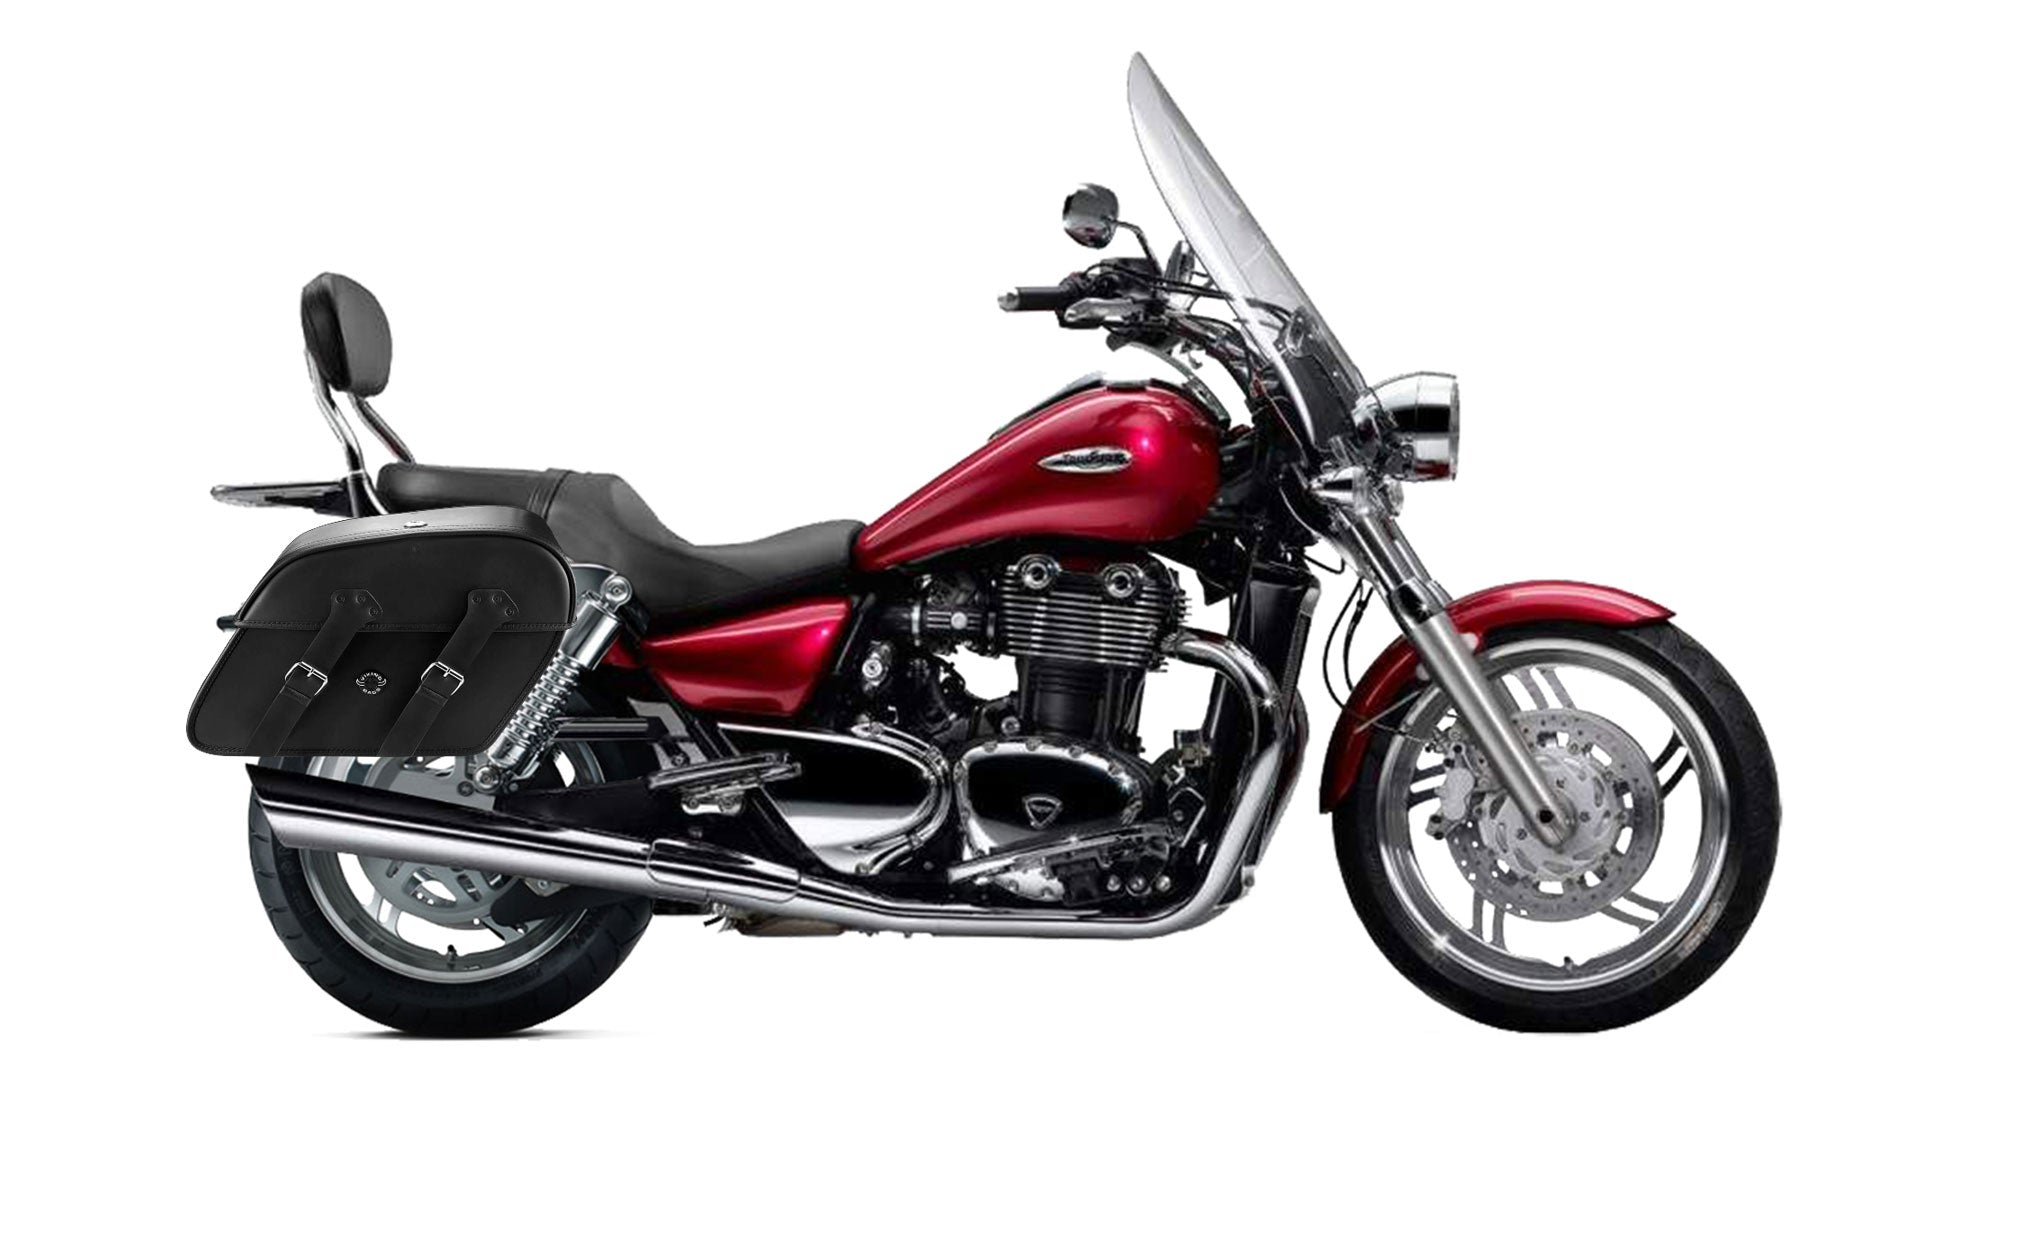 Viking Raven Extra Large Triumph Thunderbird Se Leather Motorcycle Saddlebags on Bike Photo @expand